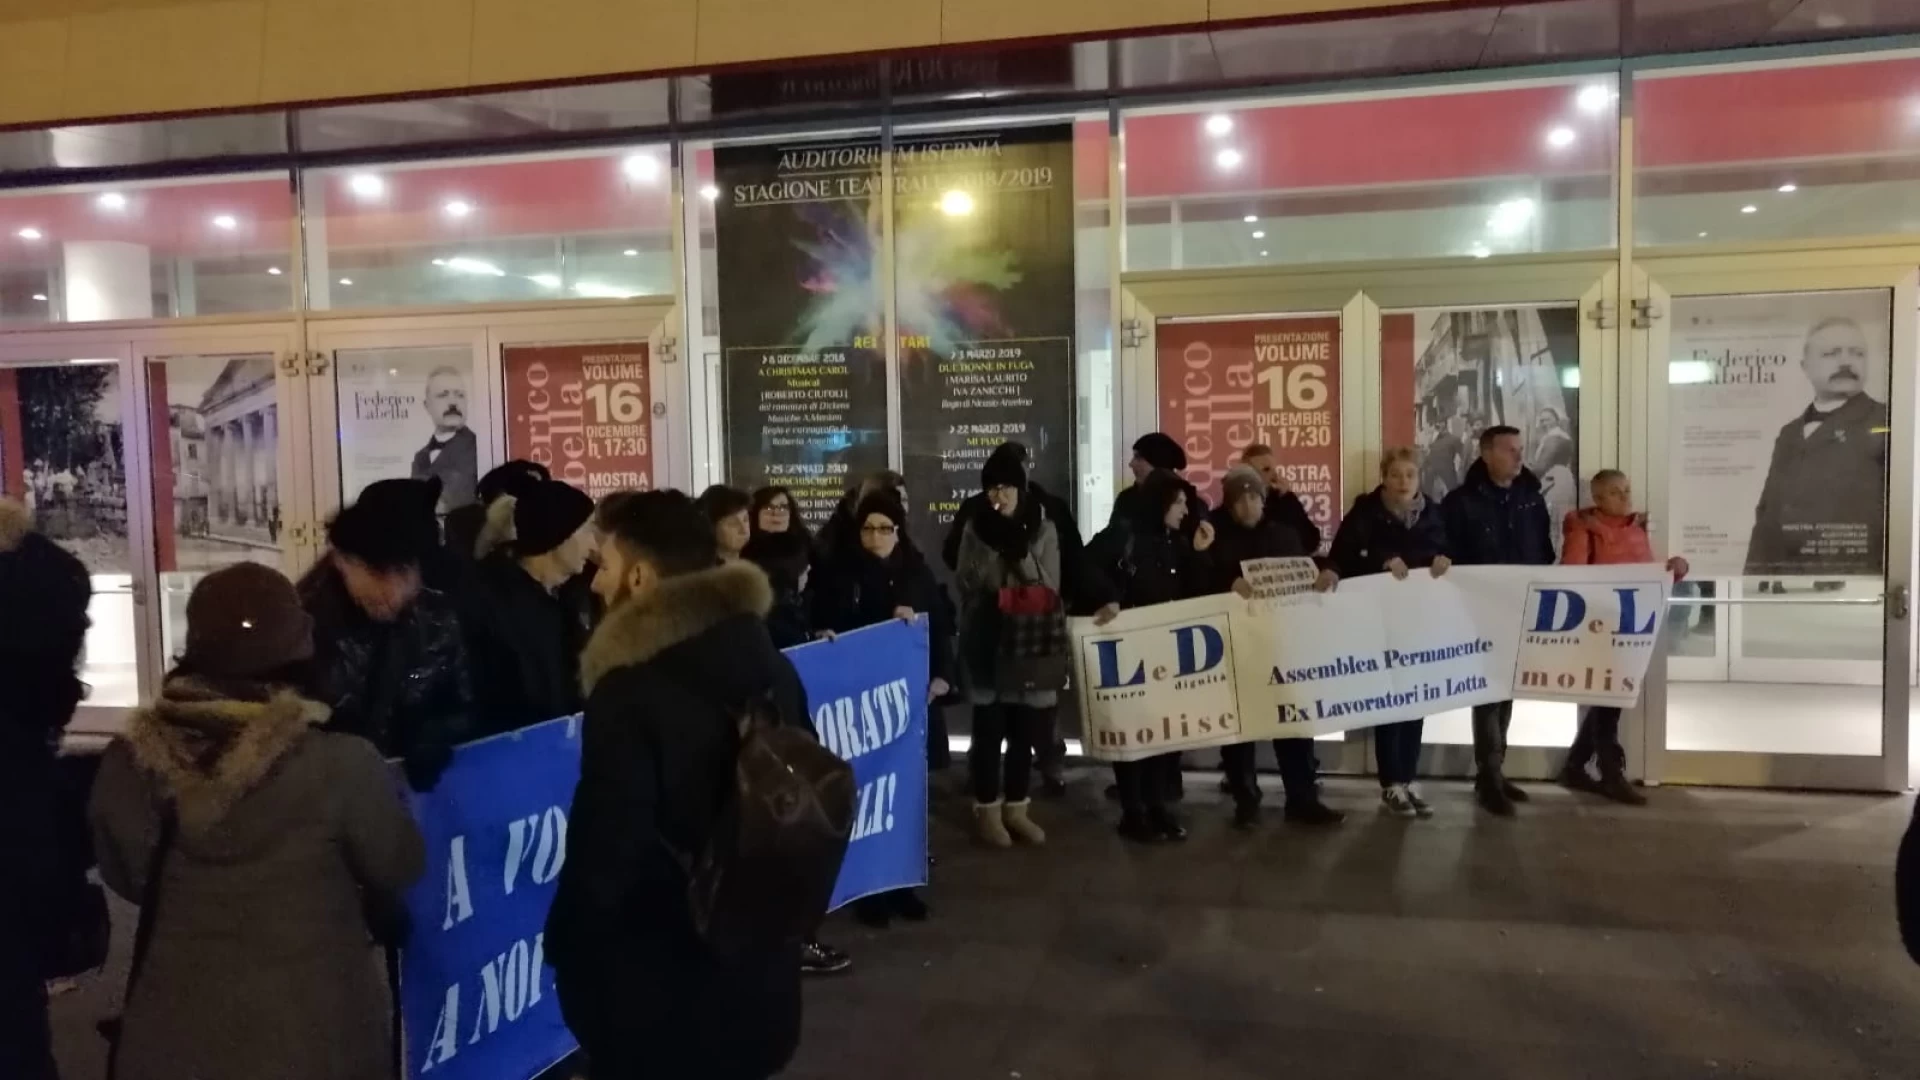 Gli ex Lavoratori in lotta protestano dinanzi l'auditorium. "E' Natale anche per noi".